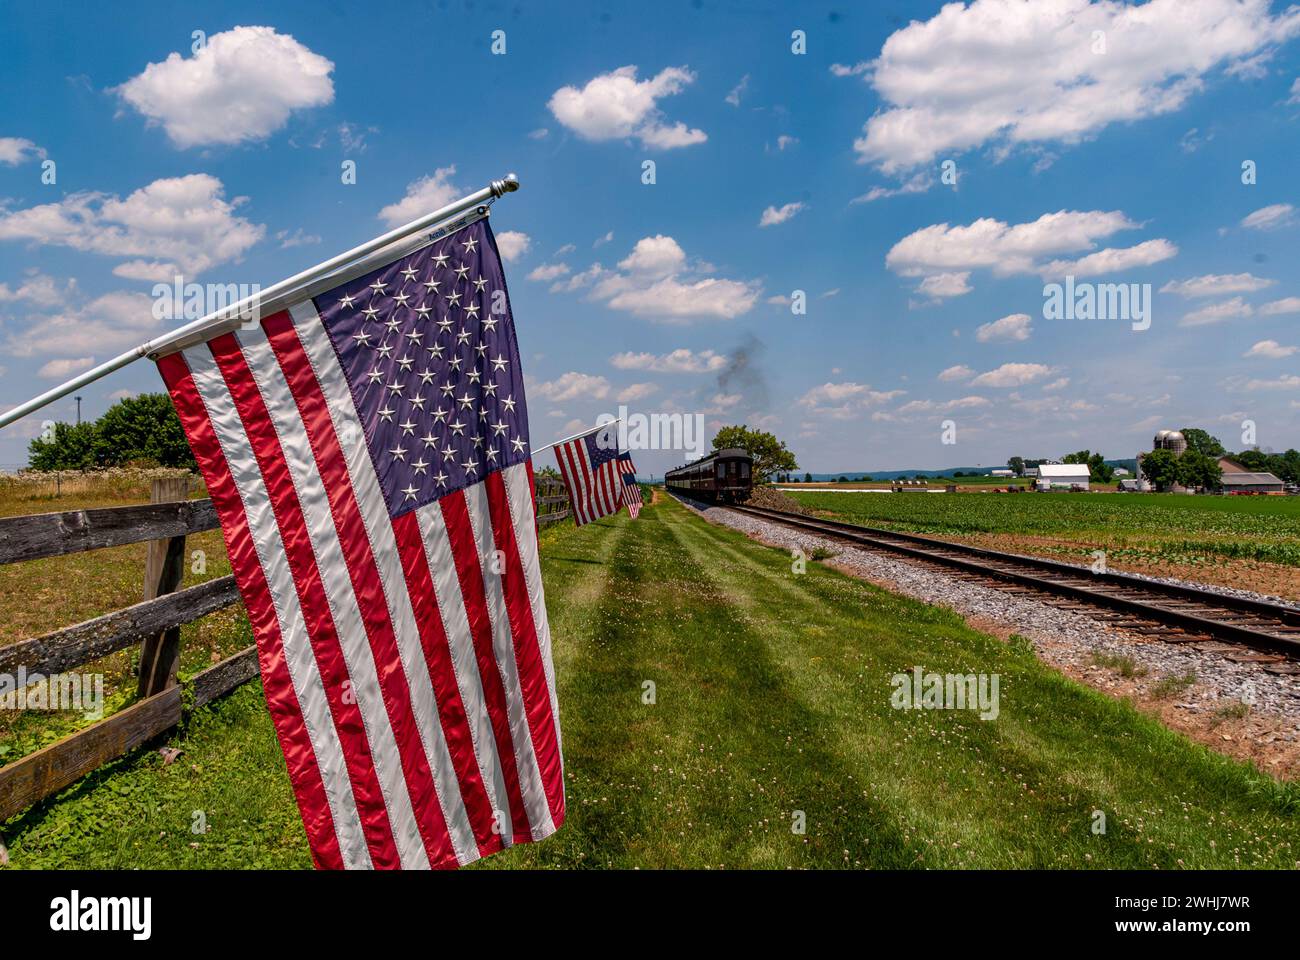 Vue des drapeaux américains agitant sur une clôture après le passage d'un train de passagers à vapeur Banque D'Images